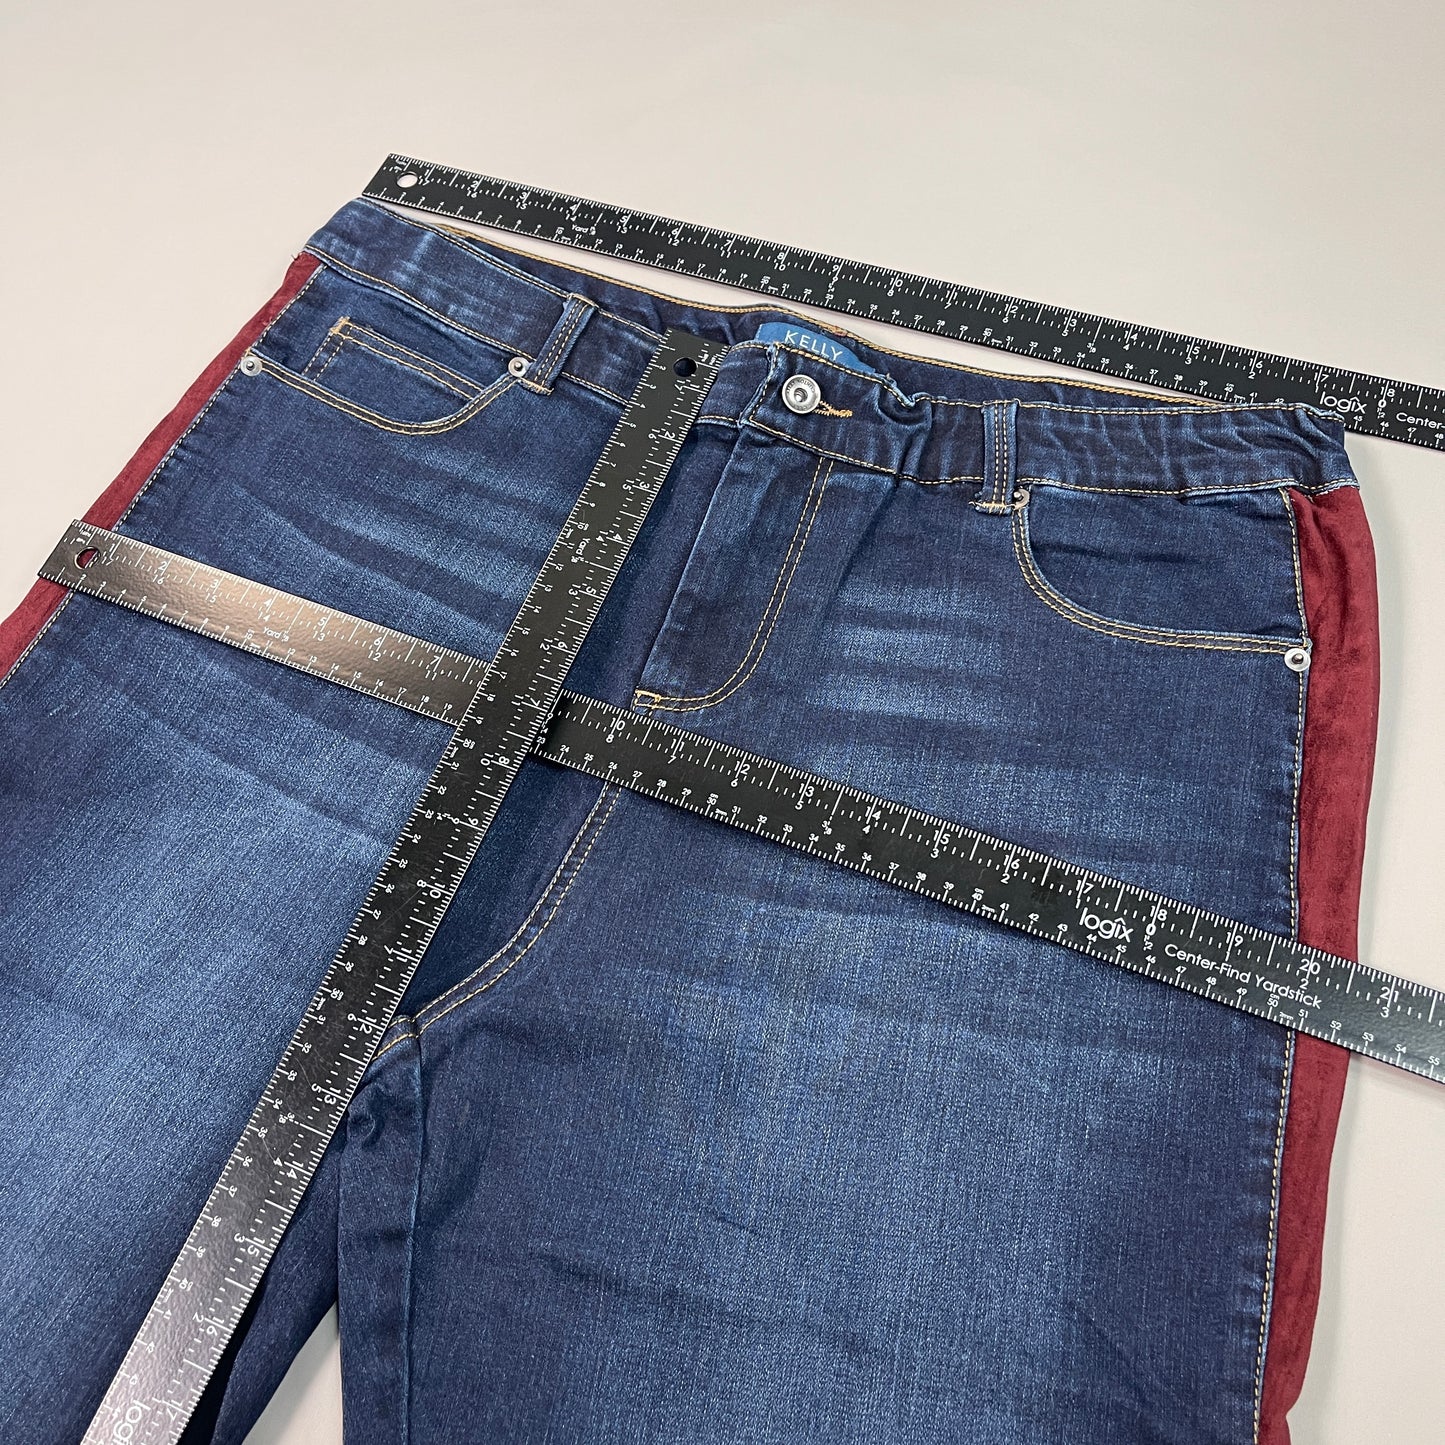 CLINTON KELLY Frayed Hem Jeans Women's Sz 16 Regular Dark Wash W/ Maroon Striped Side (New)